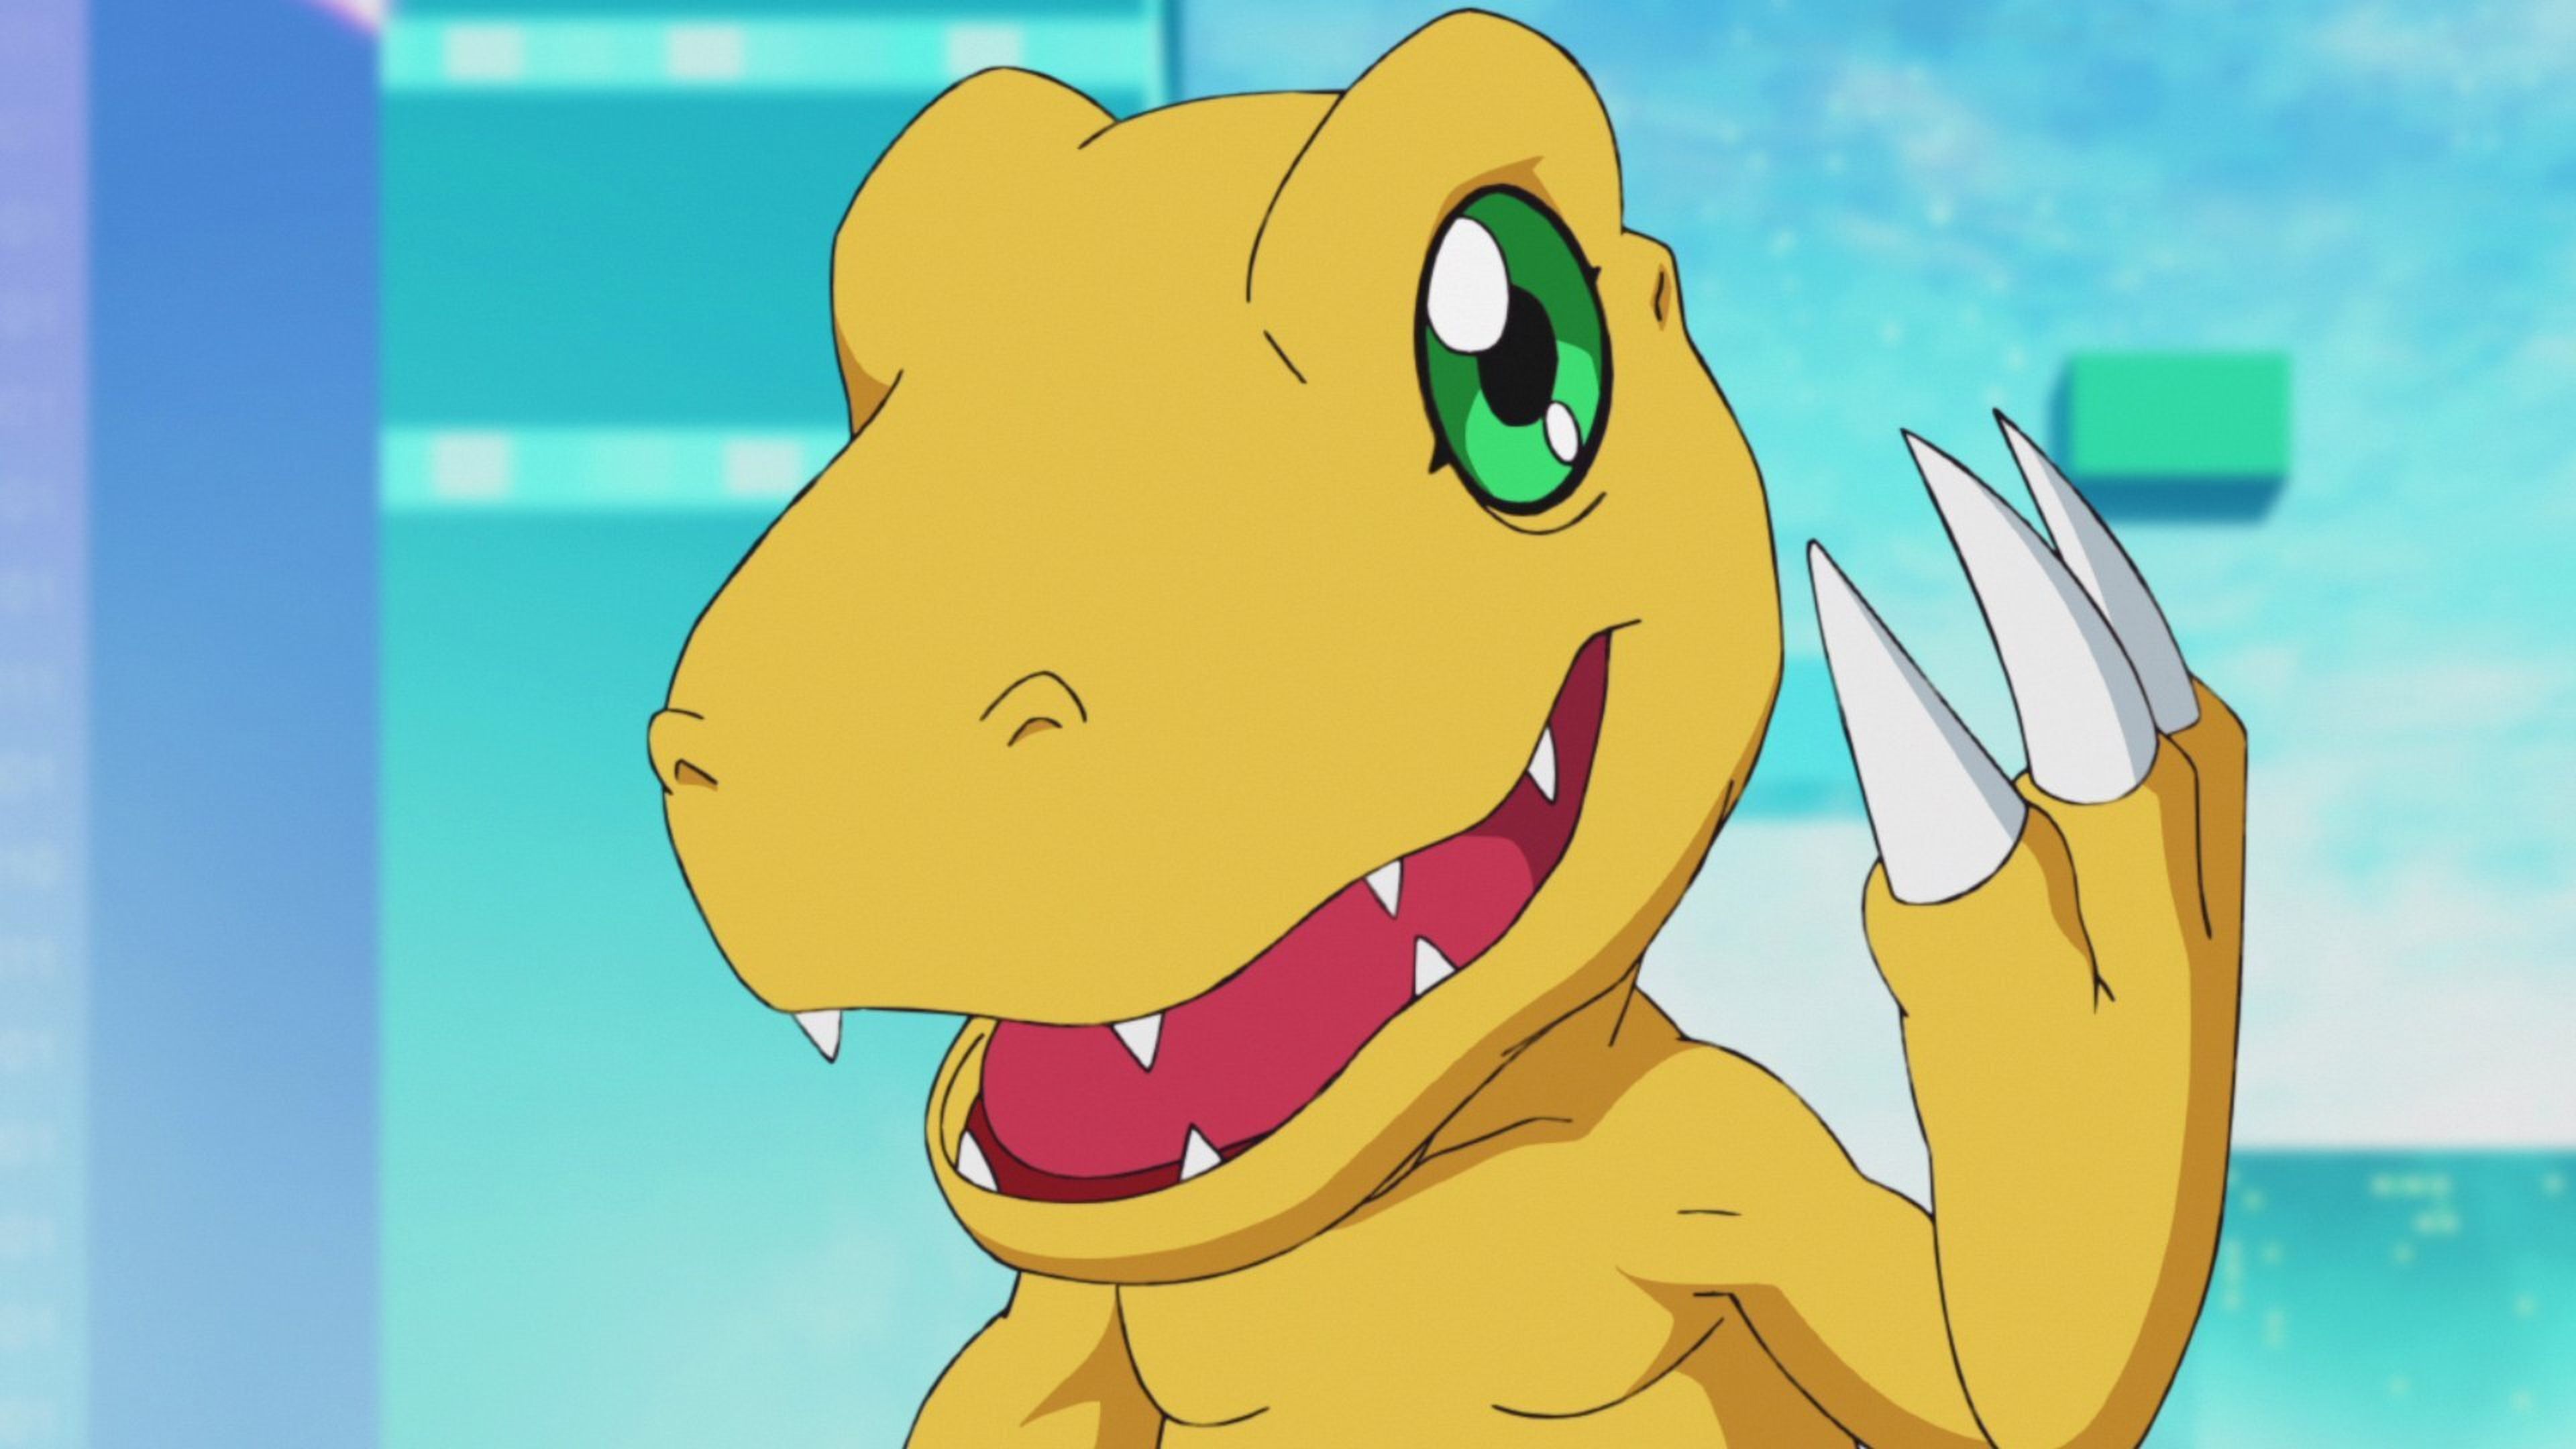 Digimon Adventure 2020 - El primer episodio es mejor que el de los 90